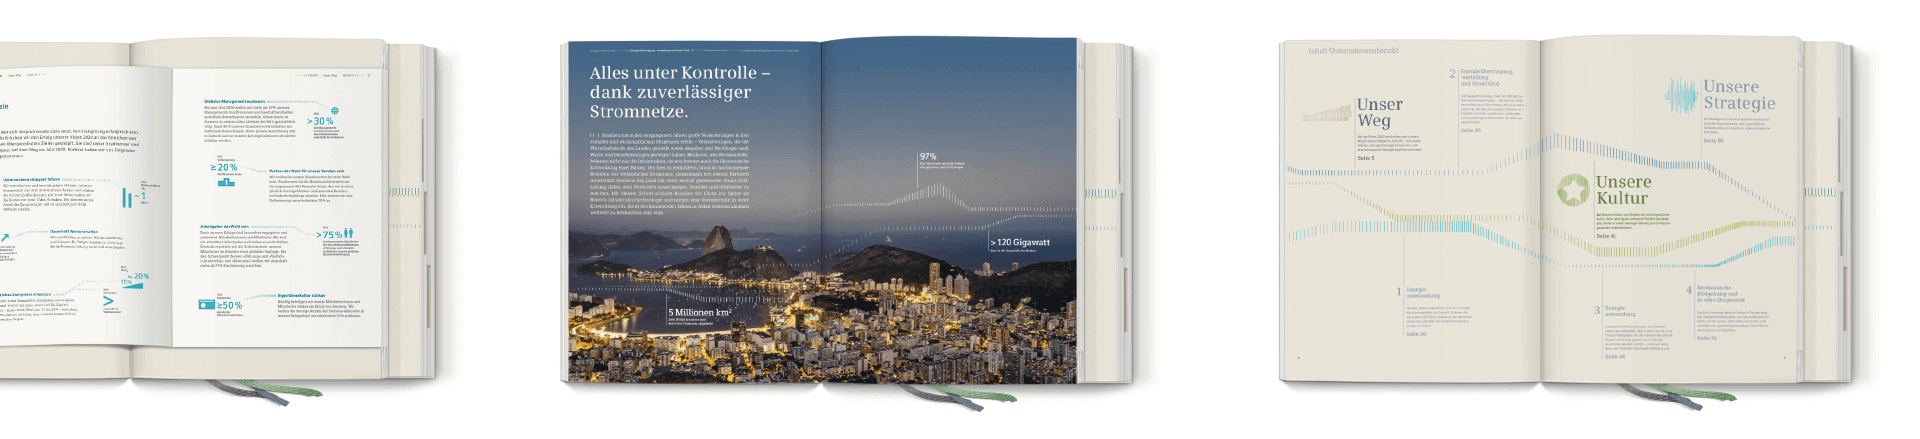 Doppelseiten aus dem Siemens Jahresbericht 2014 mit Fotografie, Typografie und Infografiken